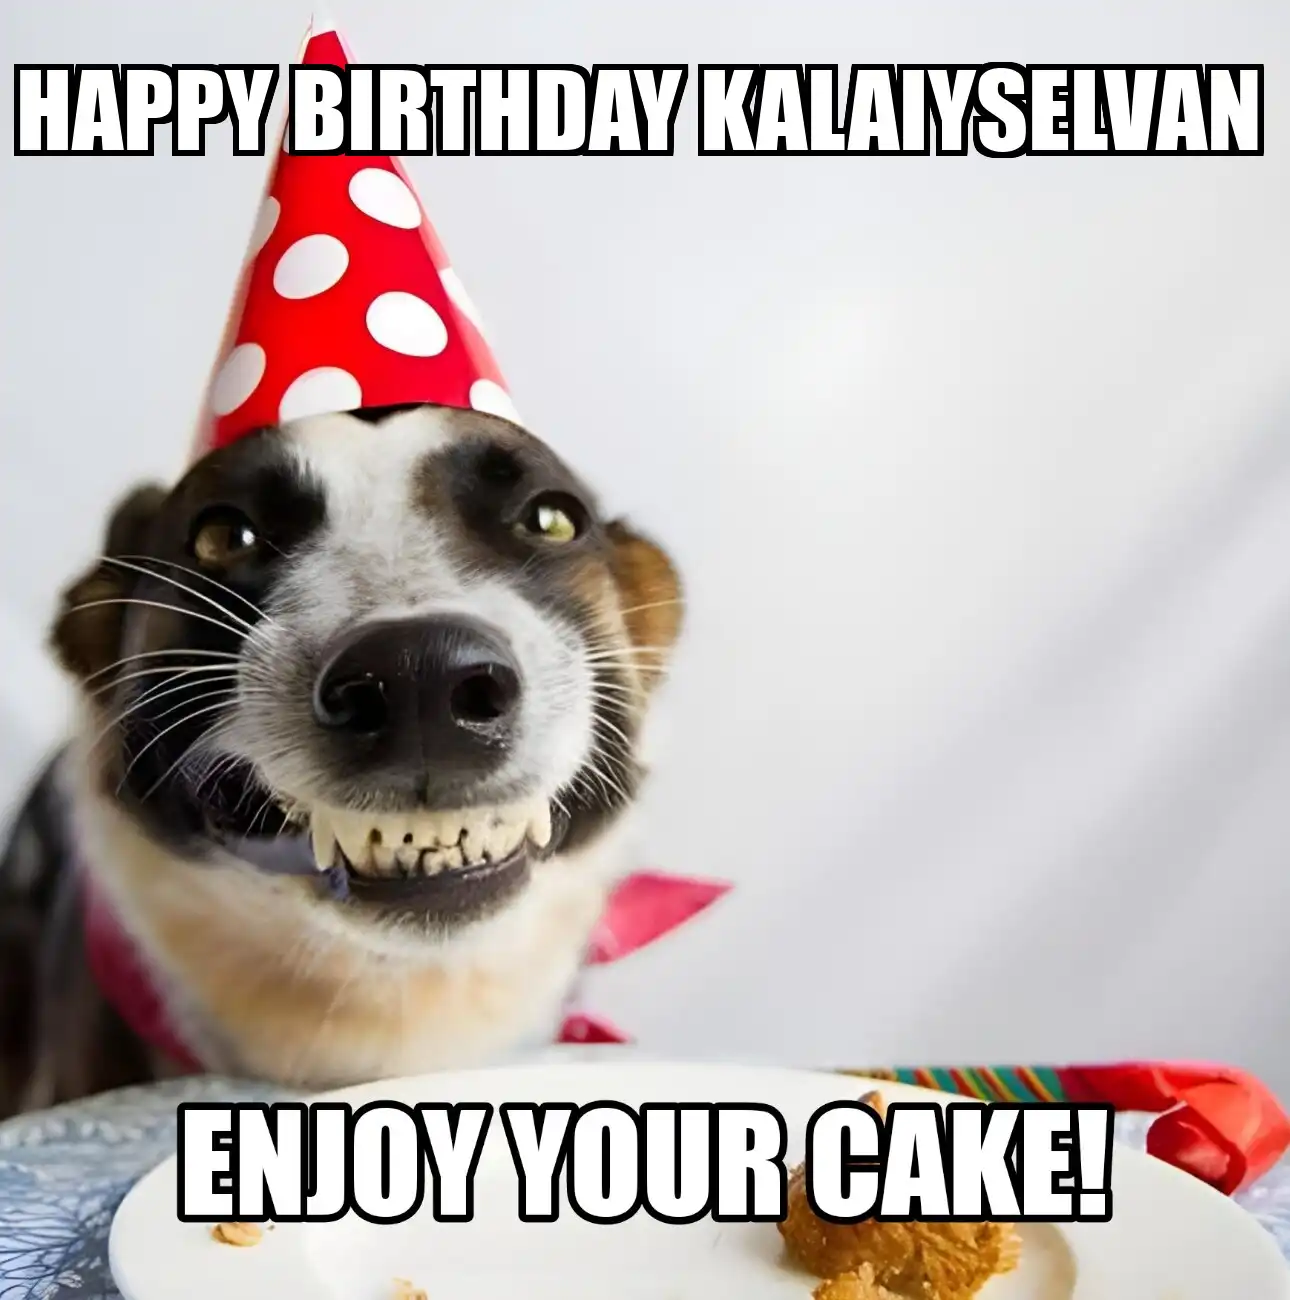 Happy Birthday Kalaiyselvan Enjoy Your Cake Dog Meme